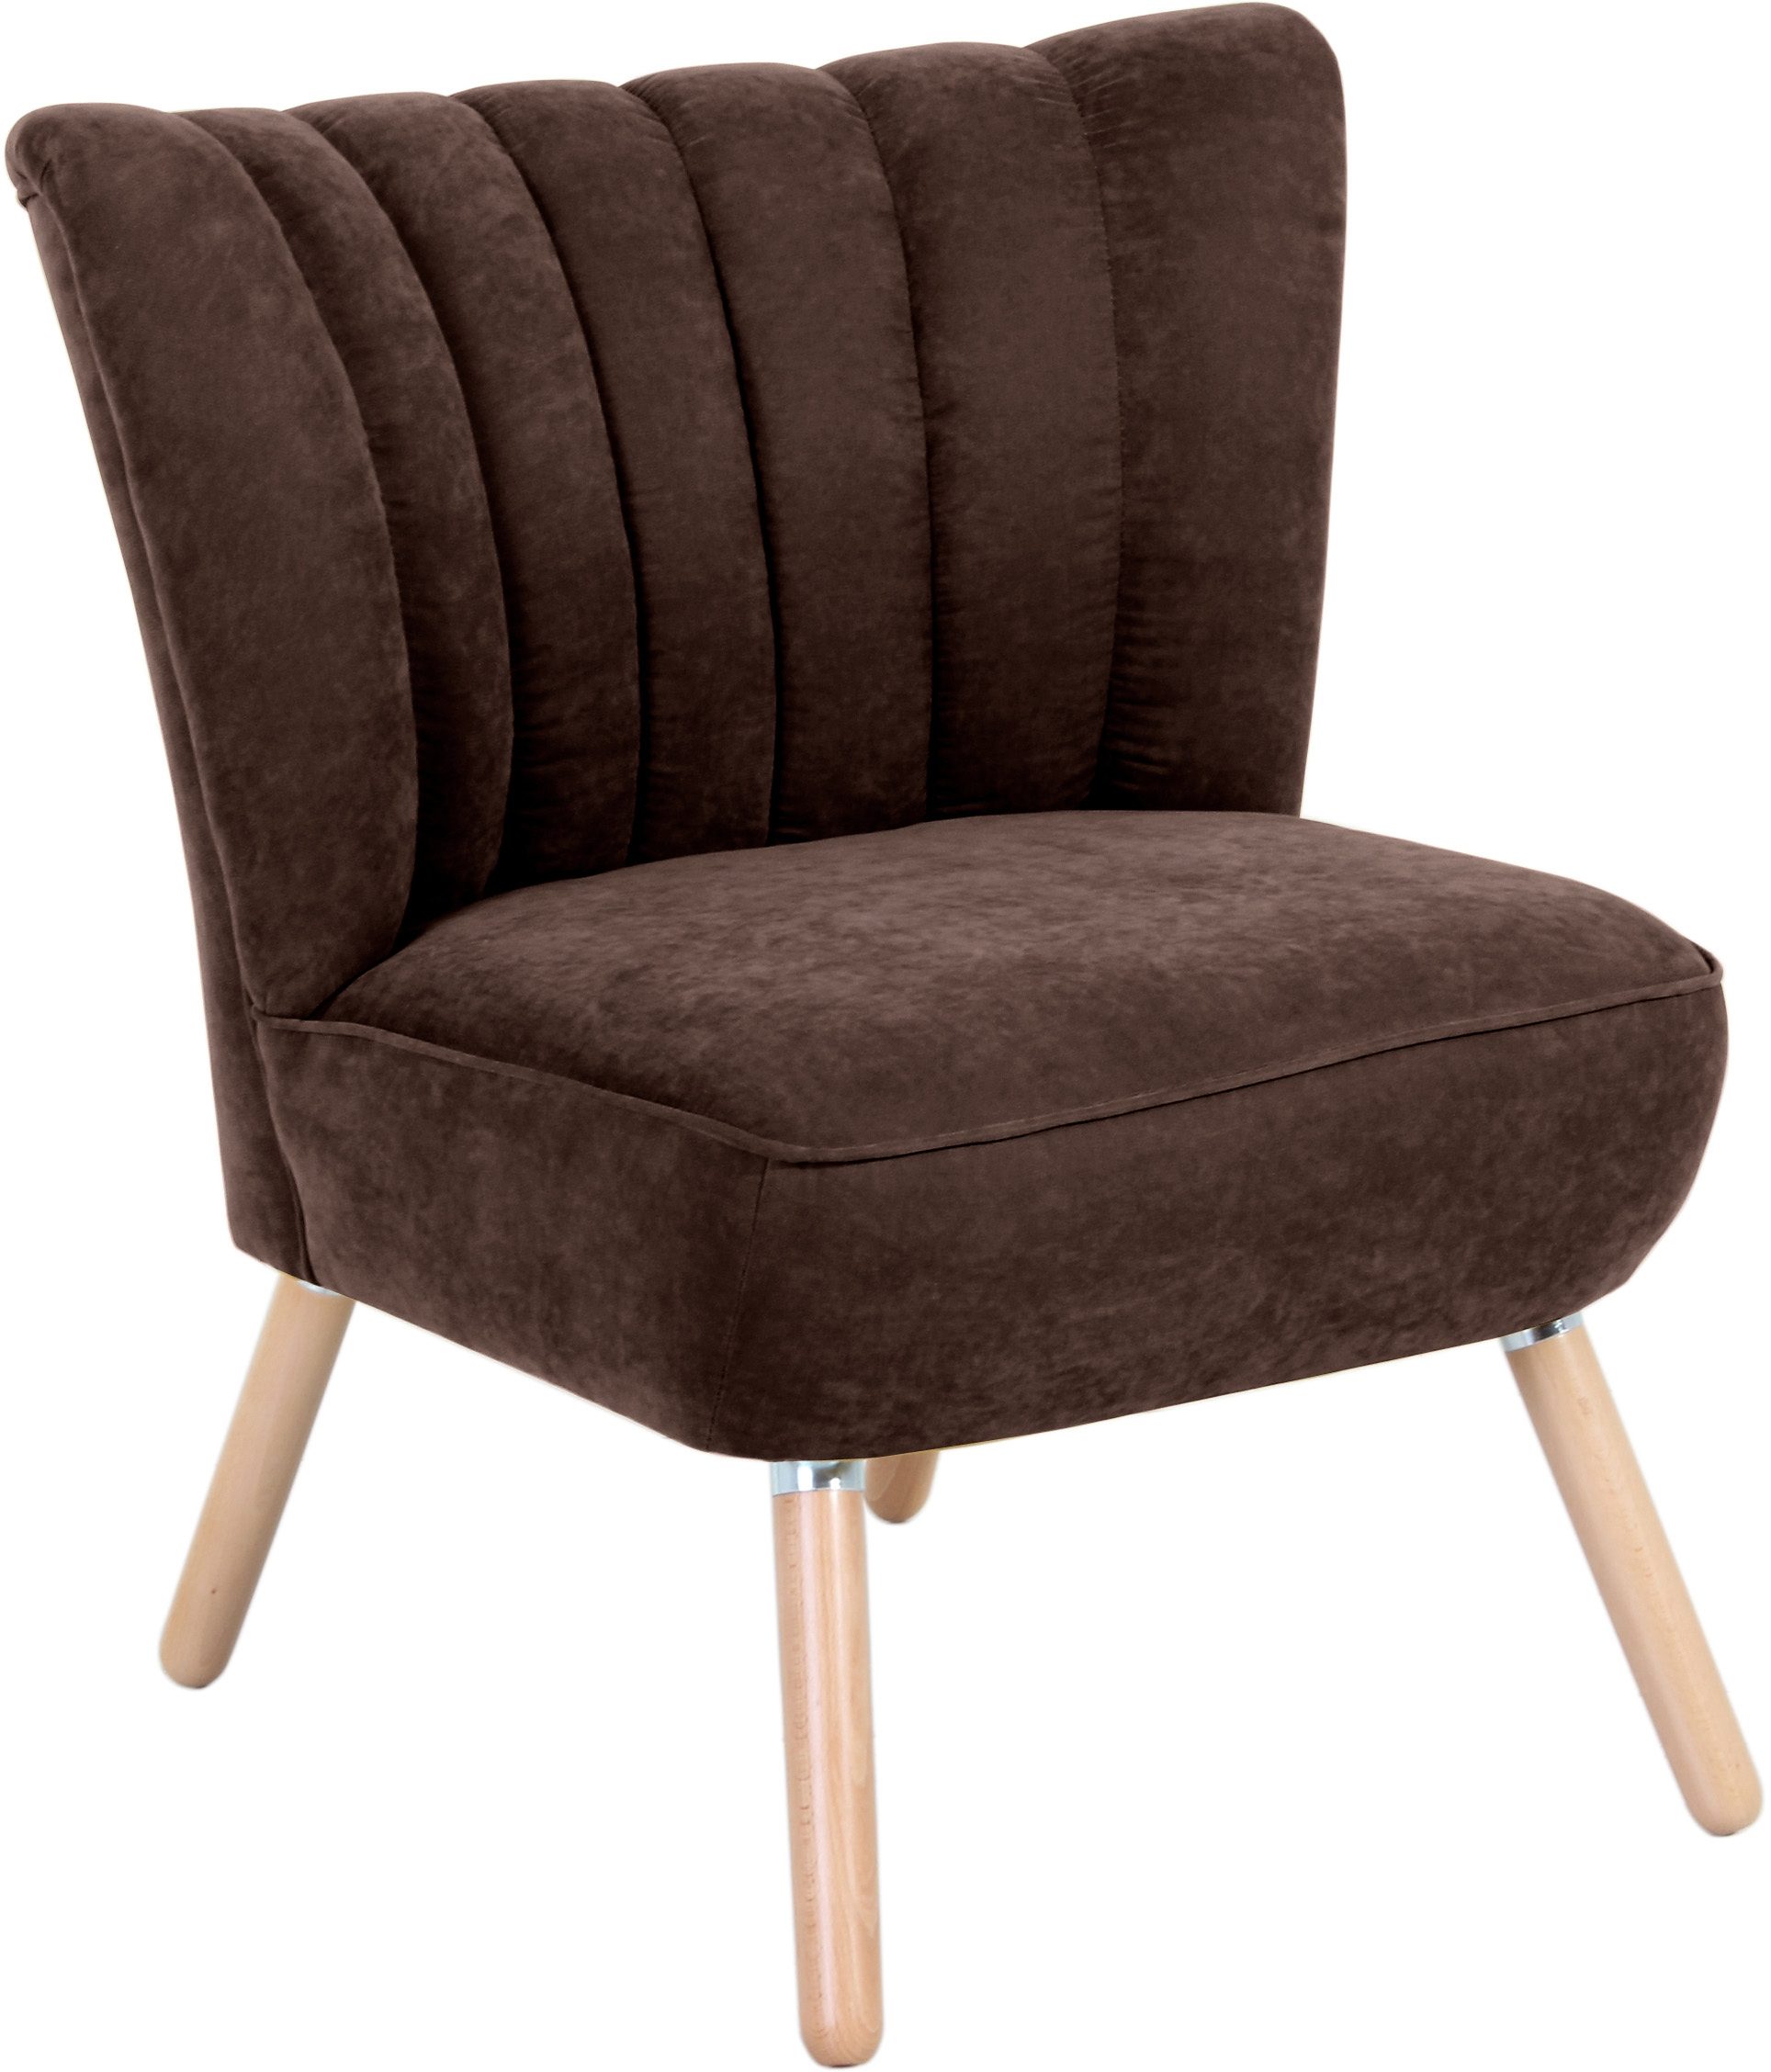 max winzer fauteuil aspen in retro stijl bruin